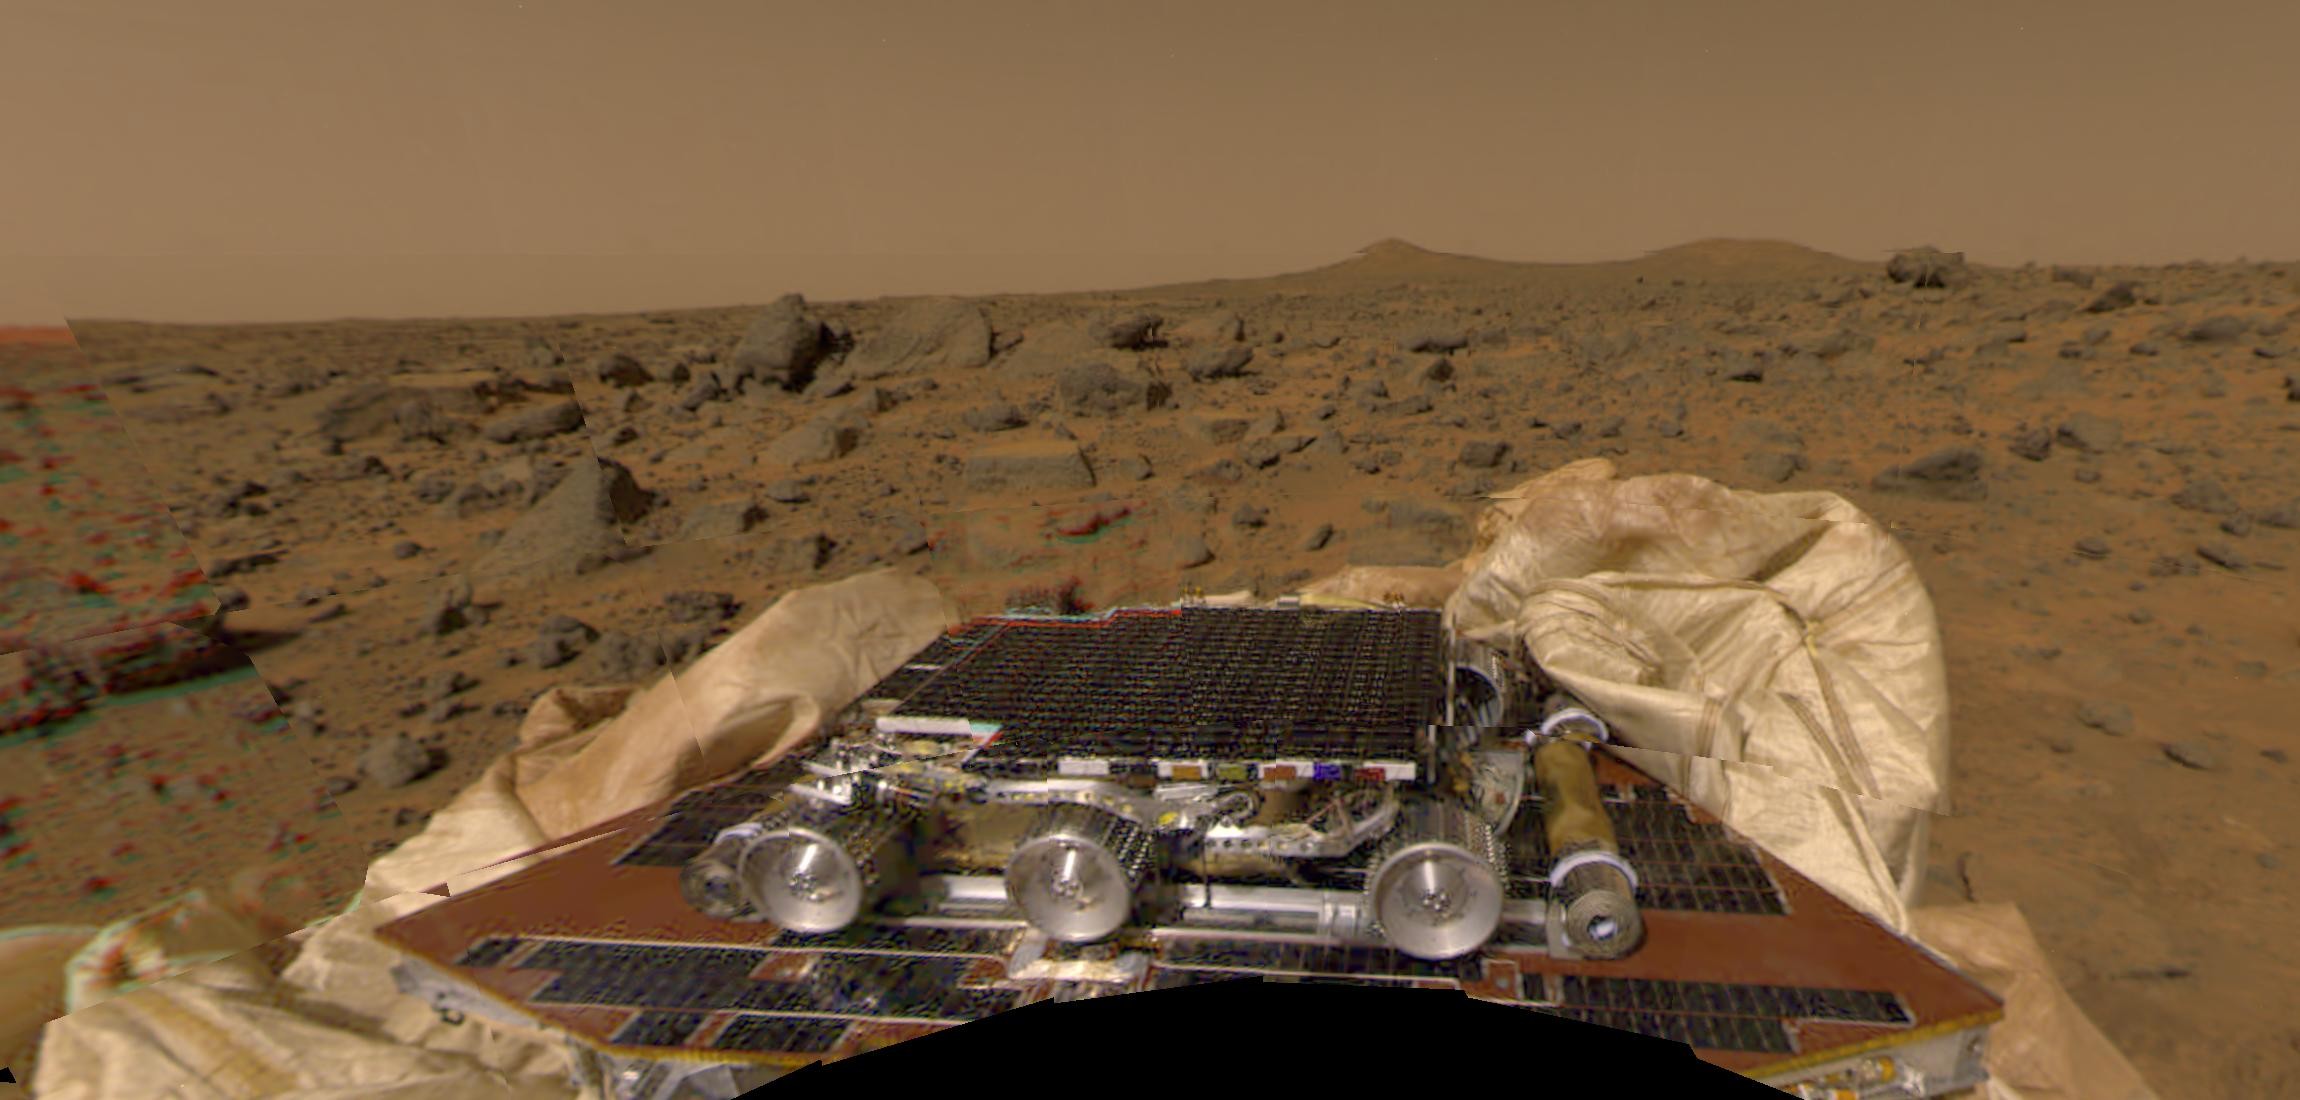 Imagem feita pela sonda Mars Pathfinder logo após o pouso em Marte, em 1997. (Foto: NASA)